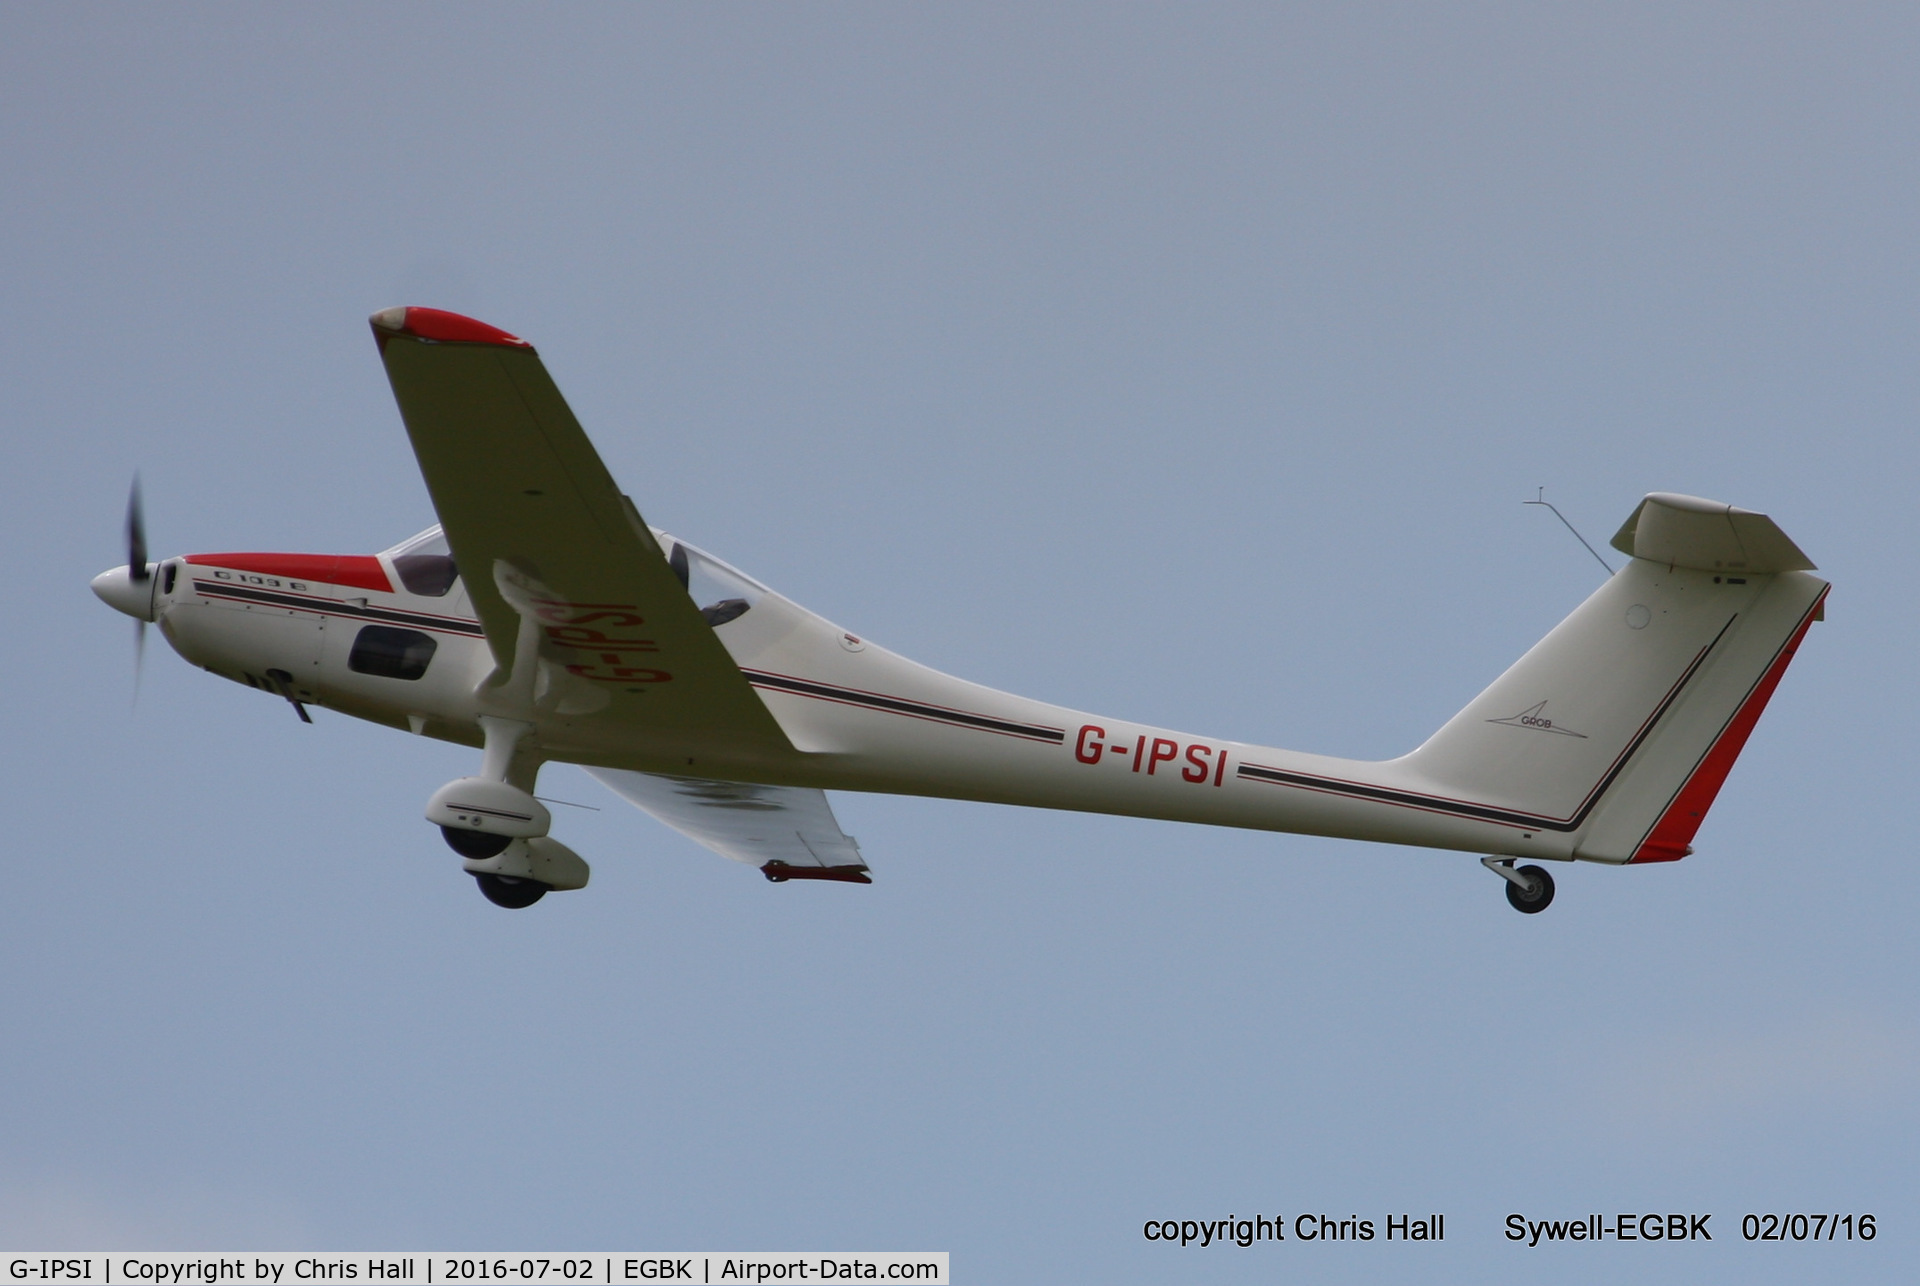 G-IPSI, 1986 Grob G-109B C/N 6425, at Aeroexpo 2016